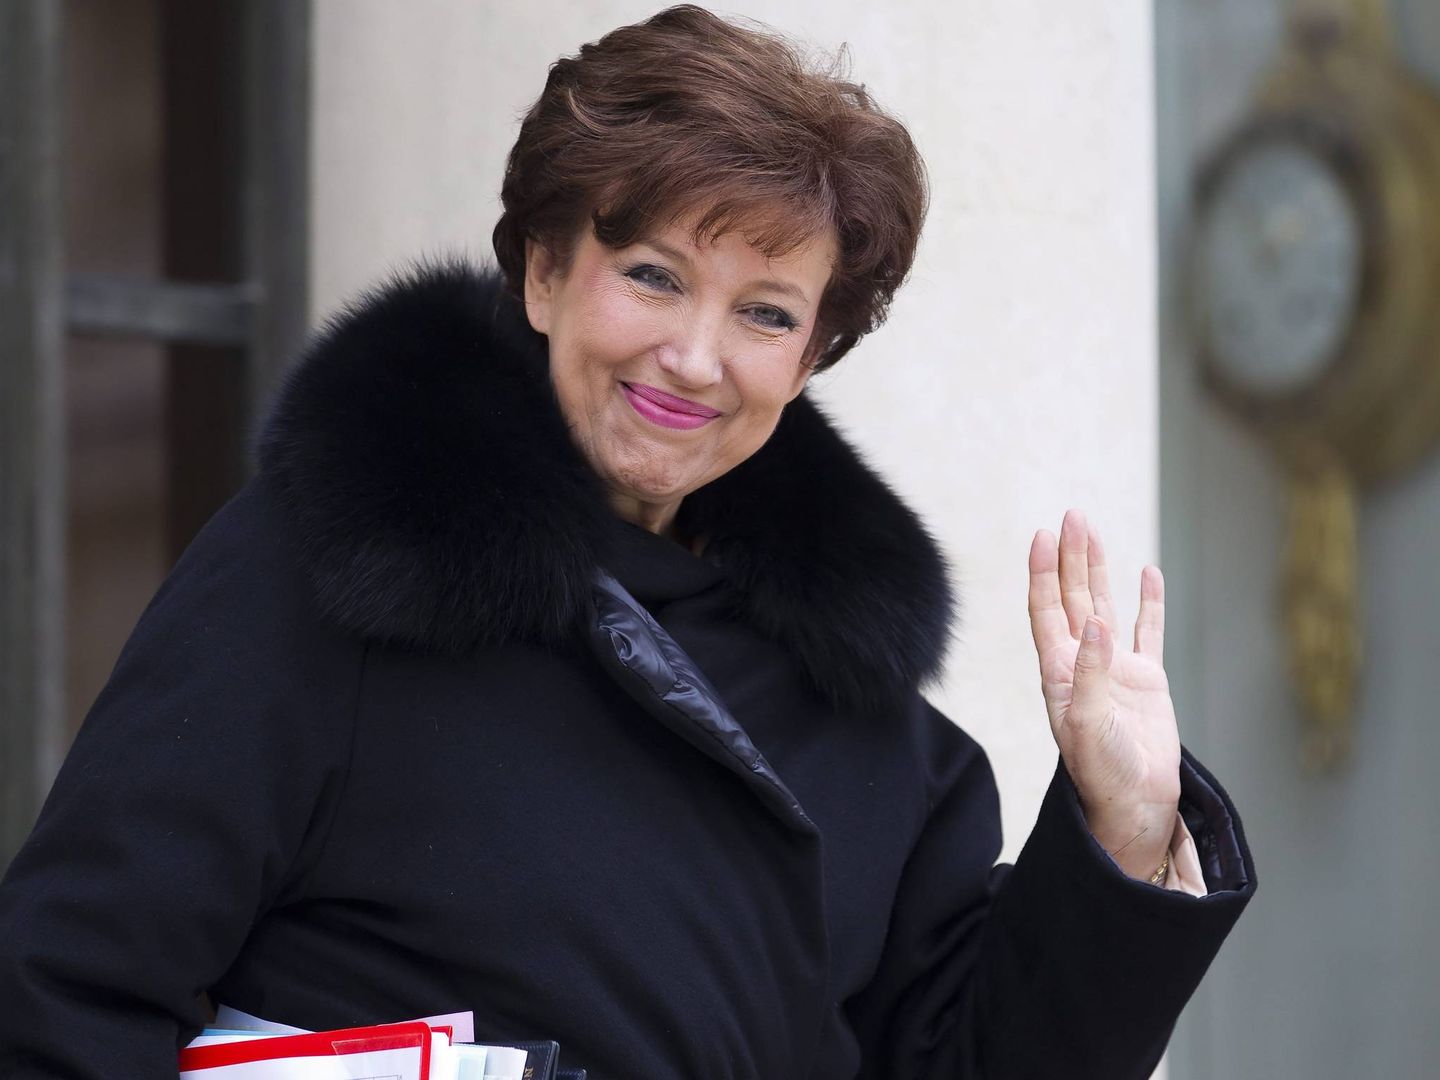 Roselyne Bachelot ocupó varias carteras ministeriales del gobierno francés en entre 2002 y 2004 y 2007 y 2012. (EFE)